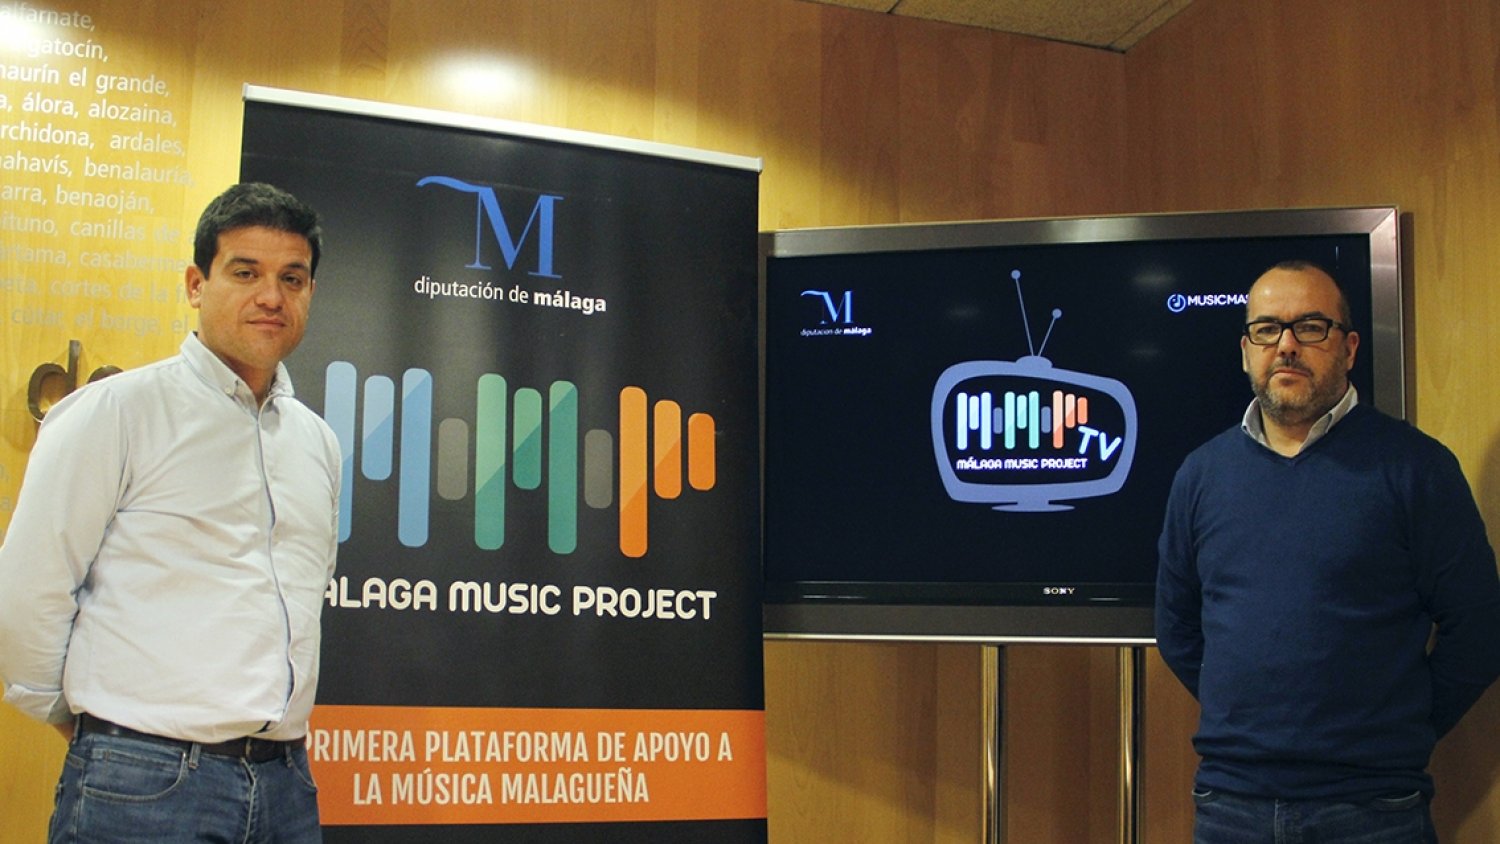 La Diputación y Musicmaster impulsan el canal de televisión de Málaga Music Project